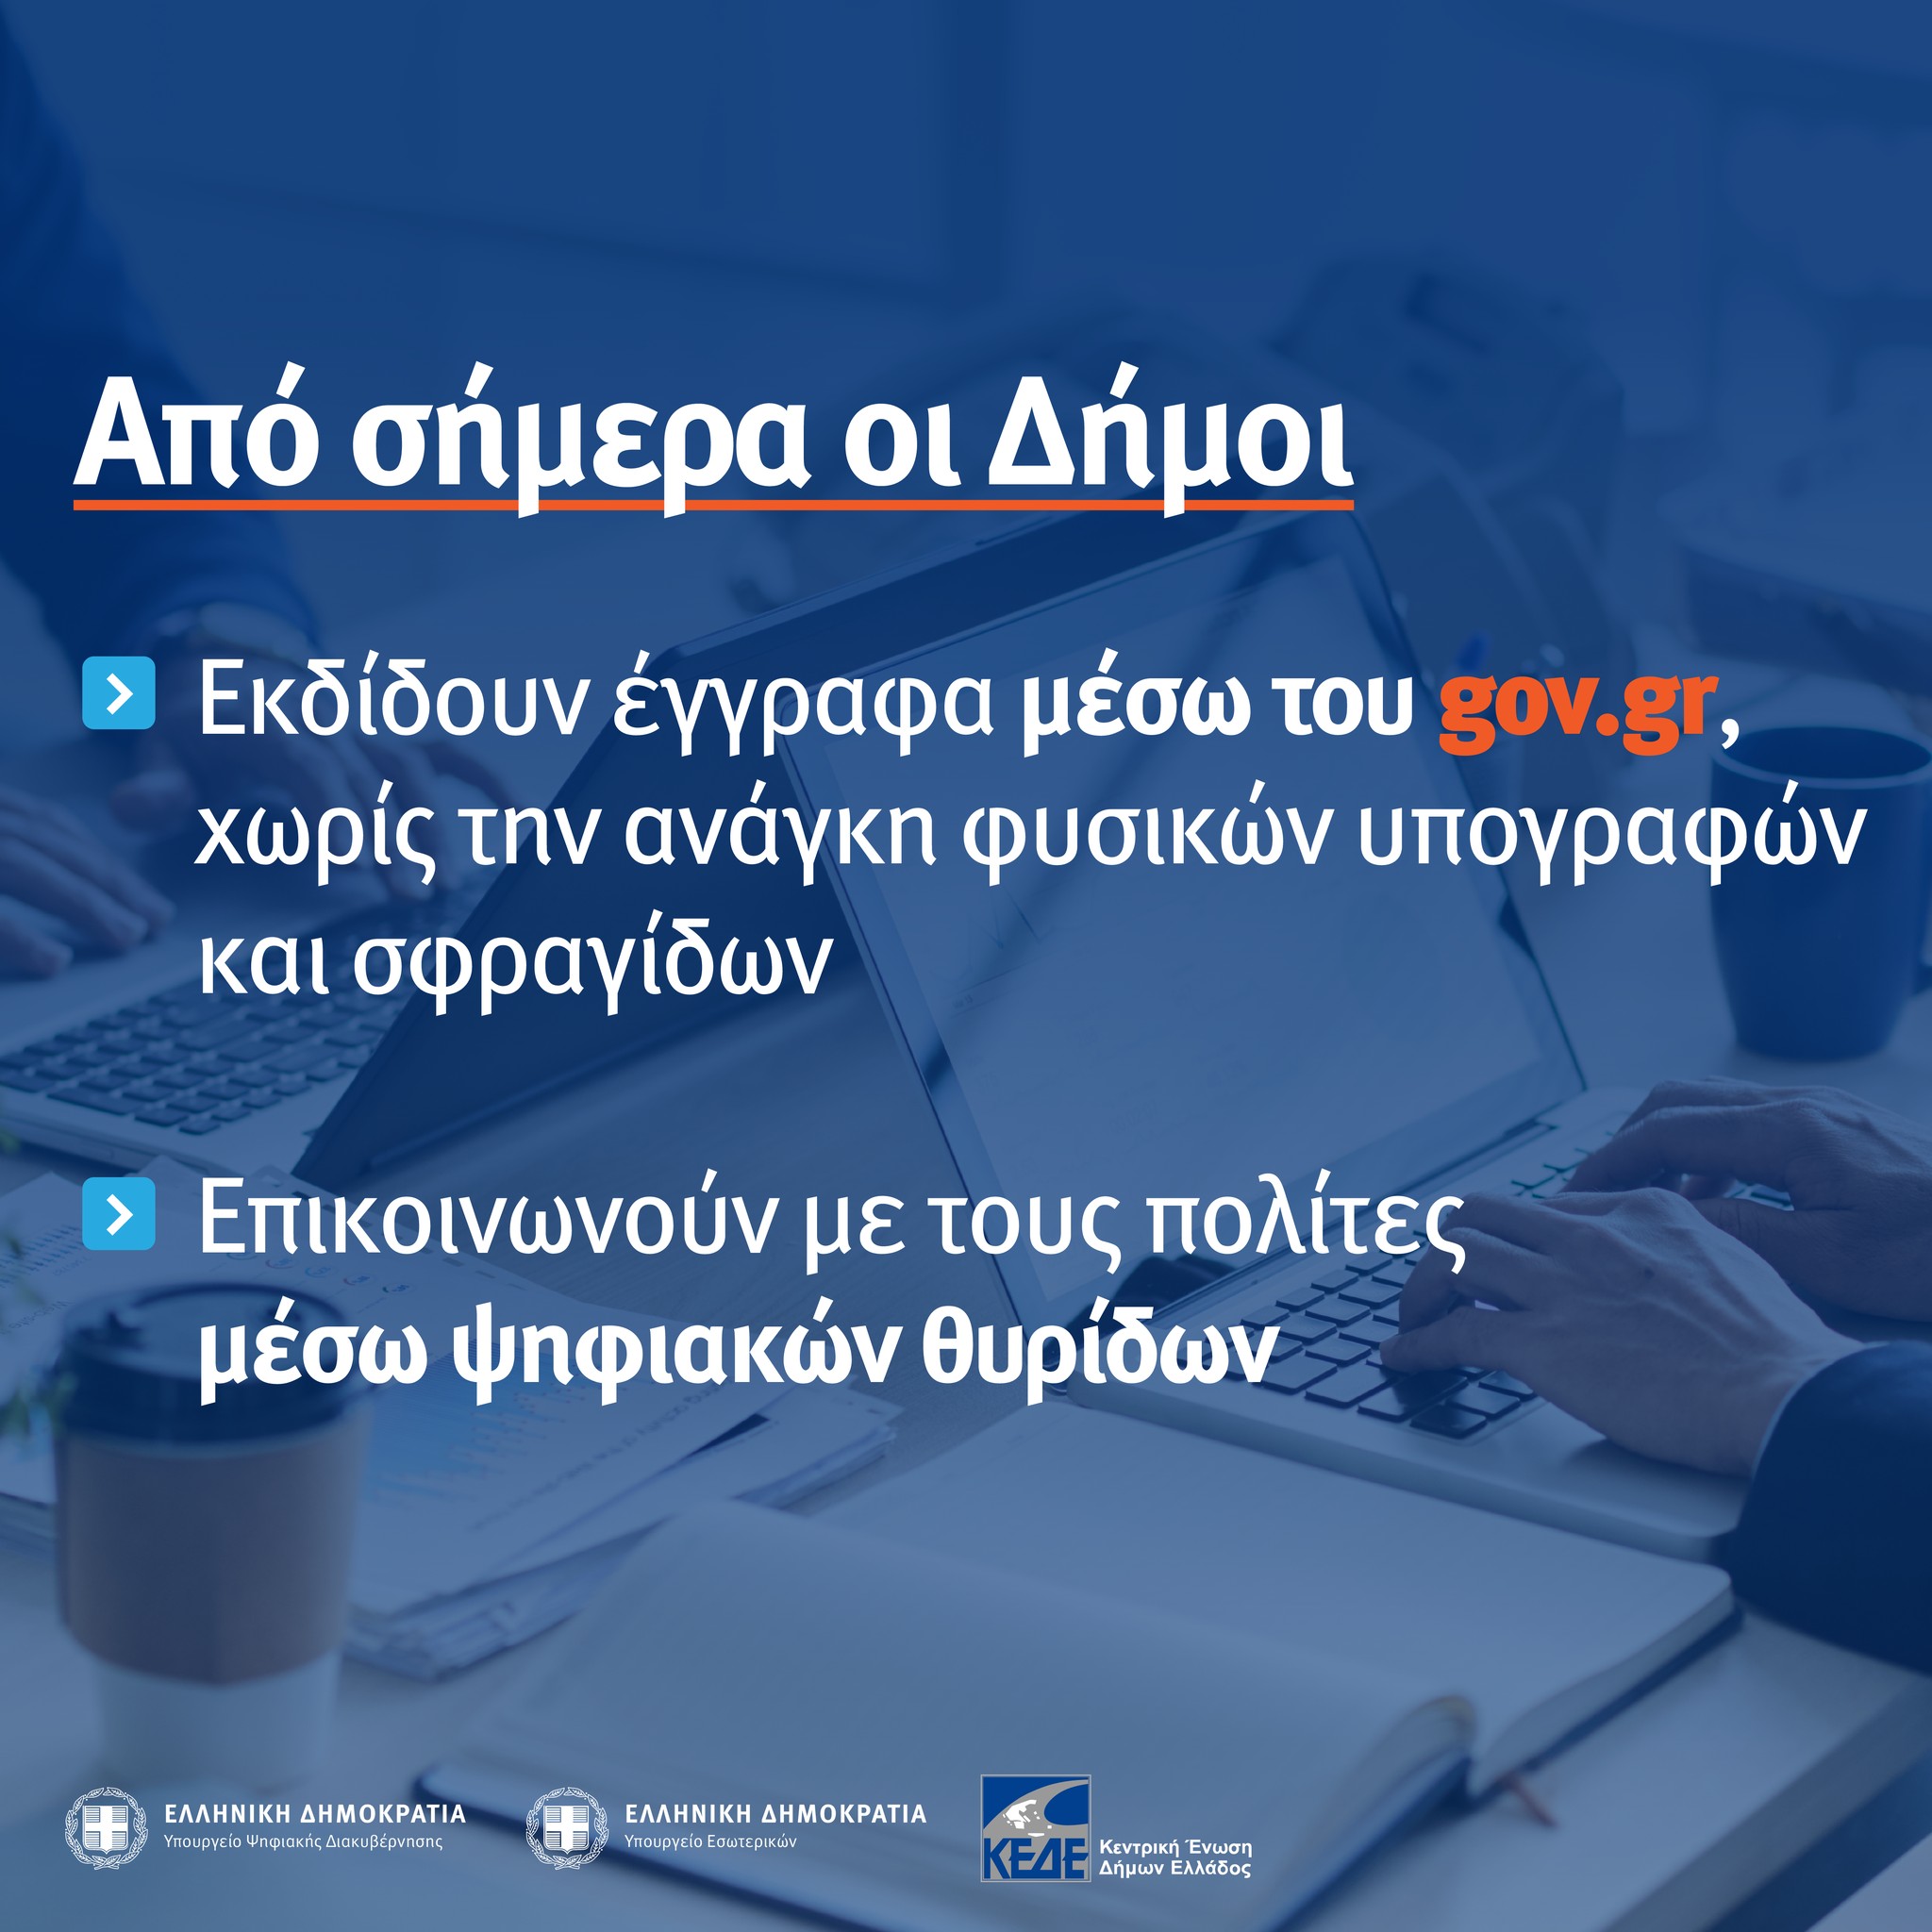 Μέσω του gov.gr η εξυπηρέτηση του πολίτη από τους Δήμους